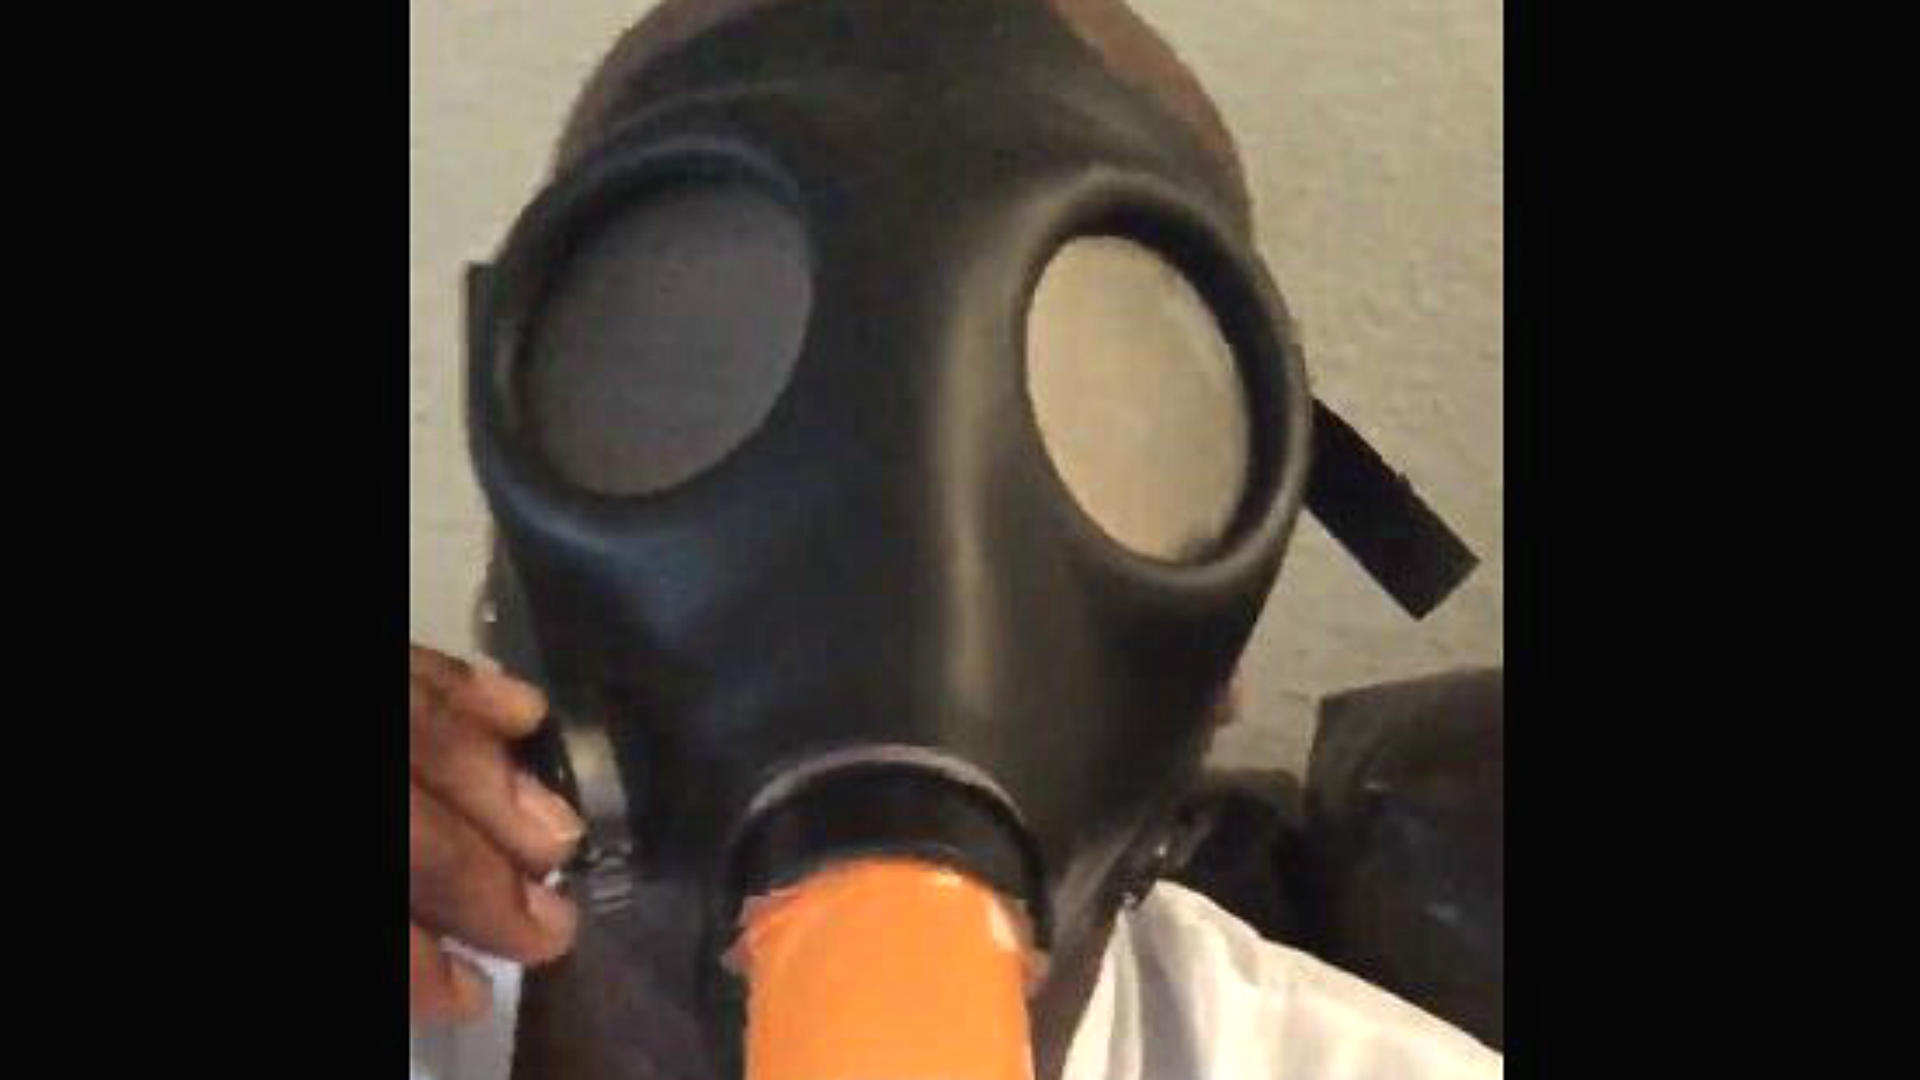 2 liter smoking gas mask